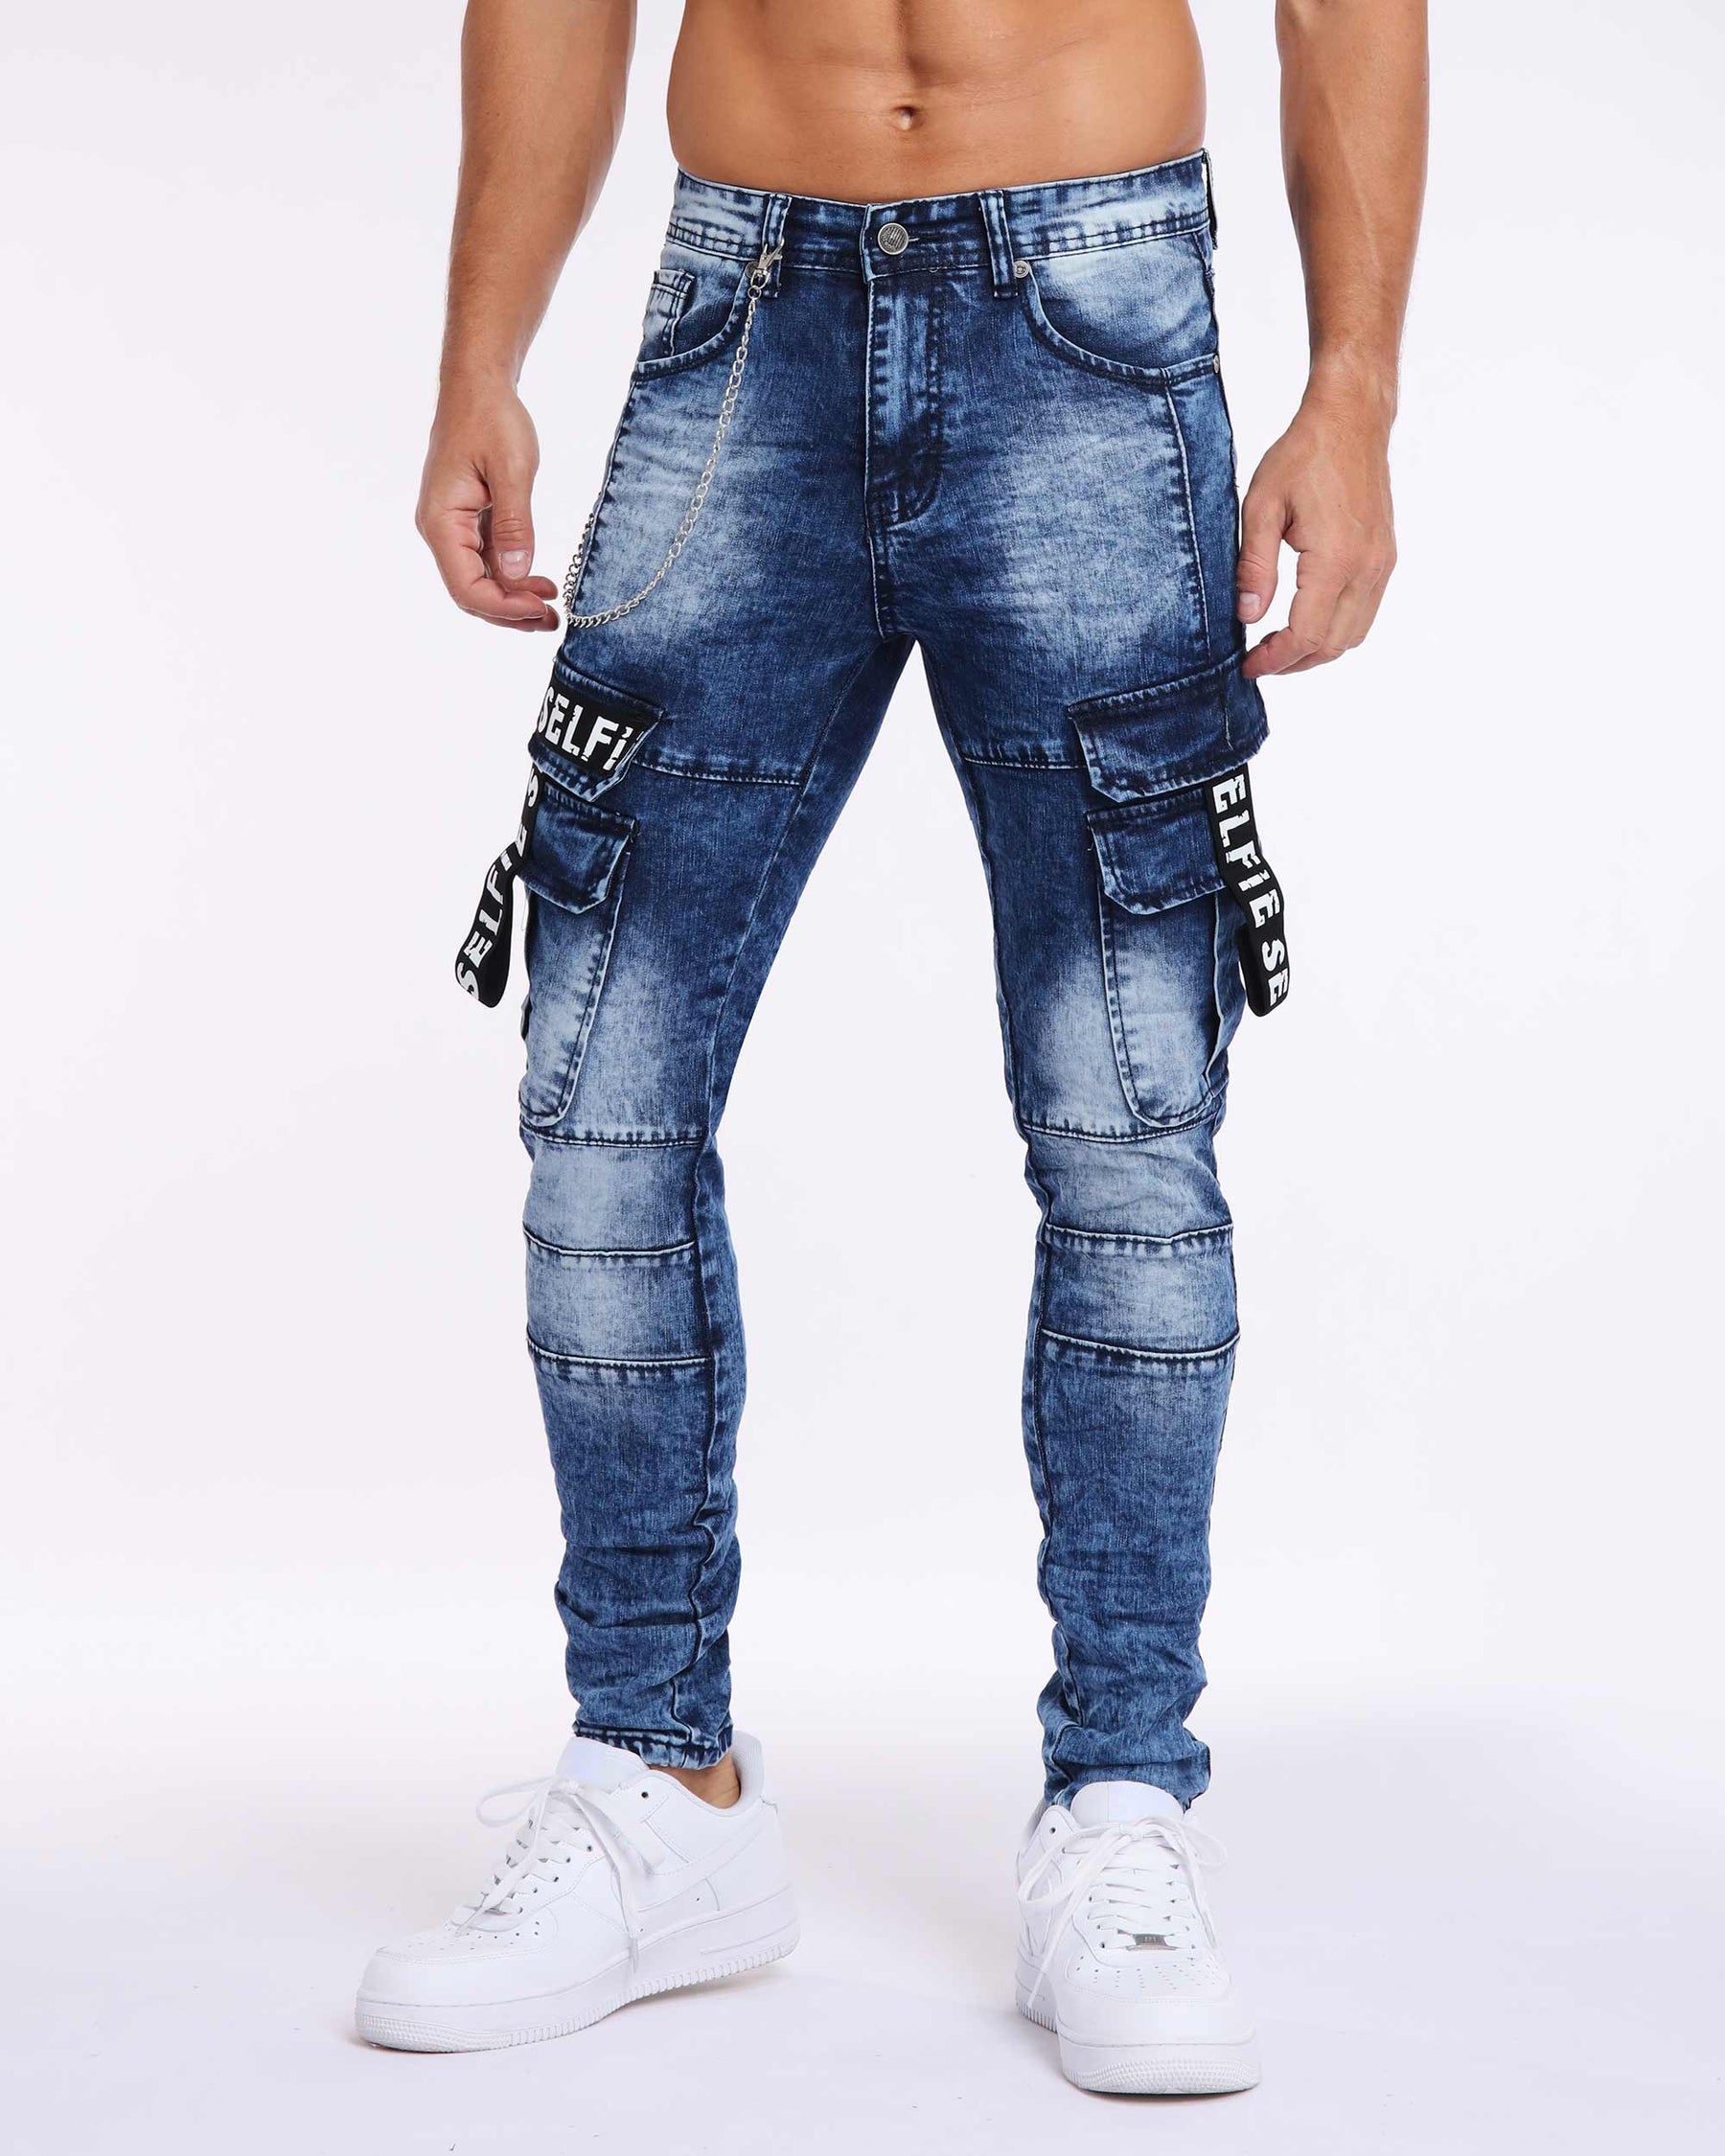 LOGEQI Printed Webbing Workwear Slim Fit Blue Jeans